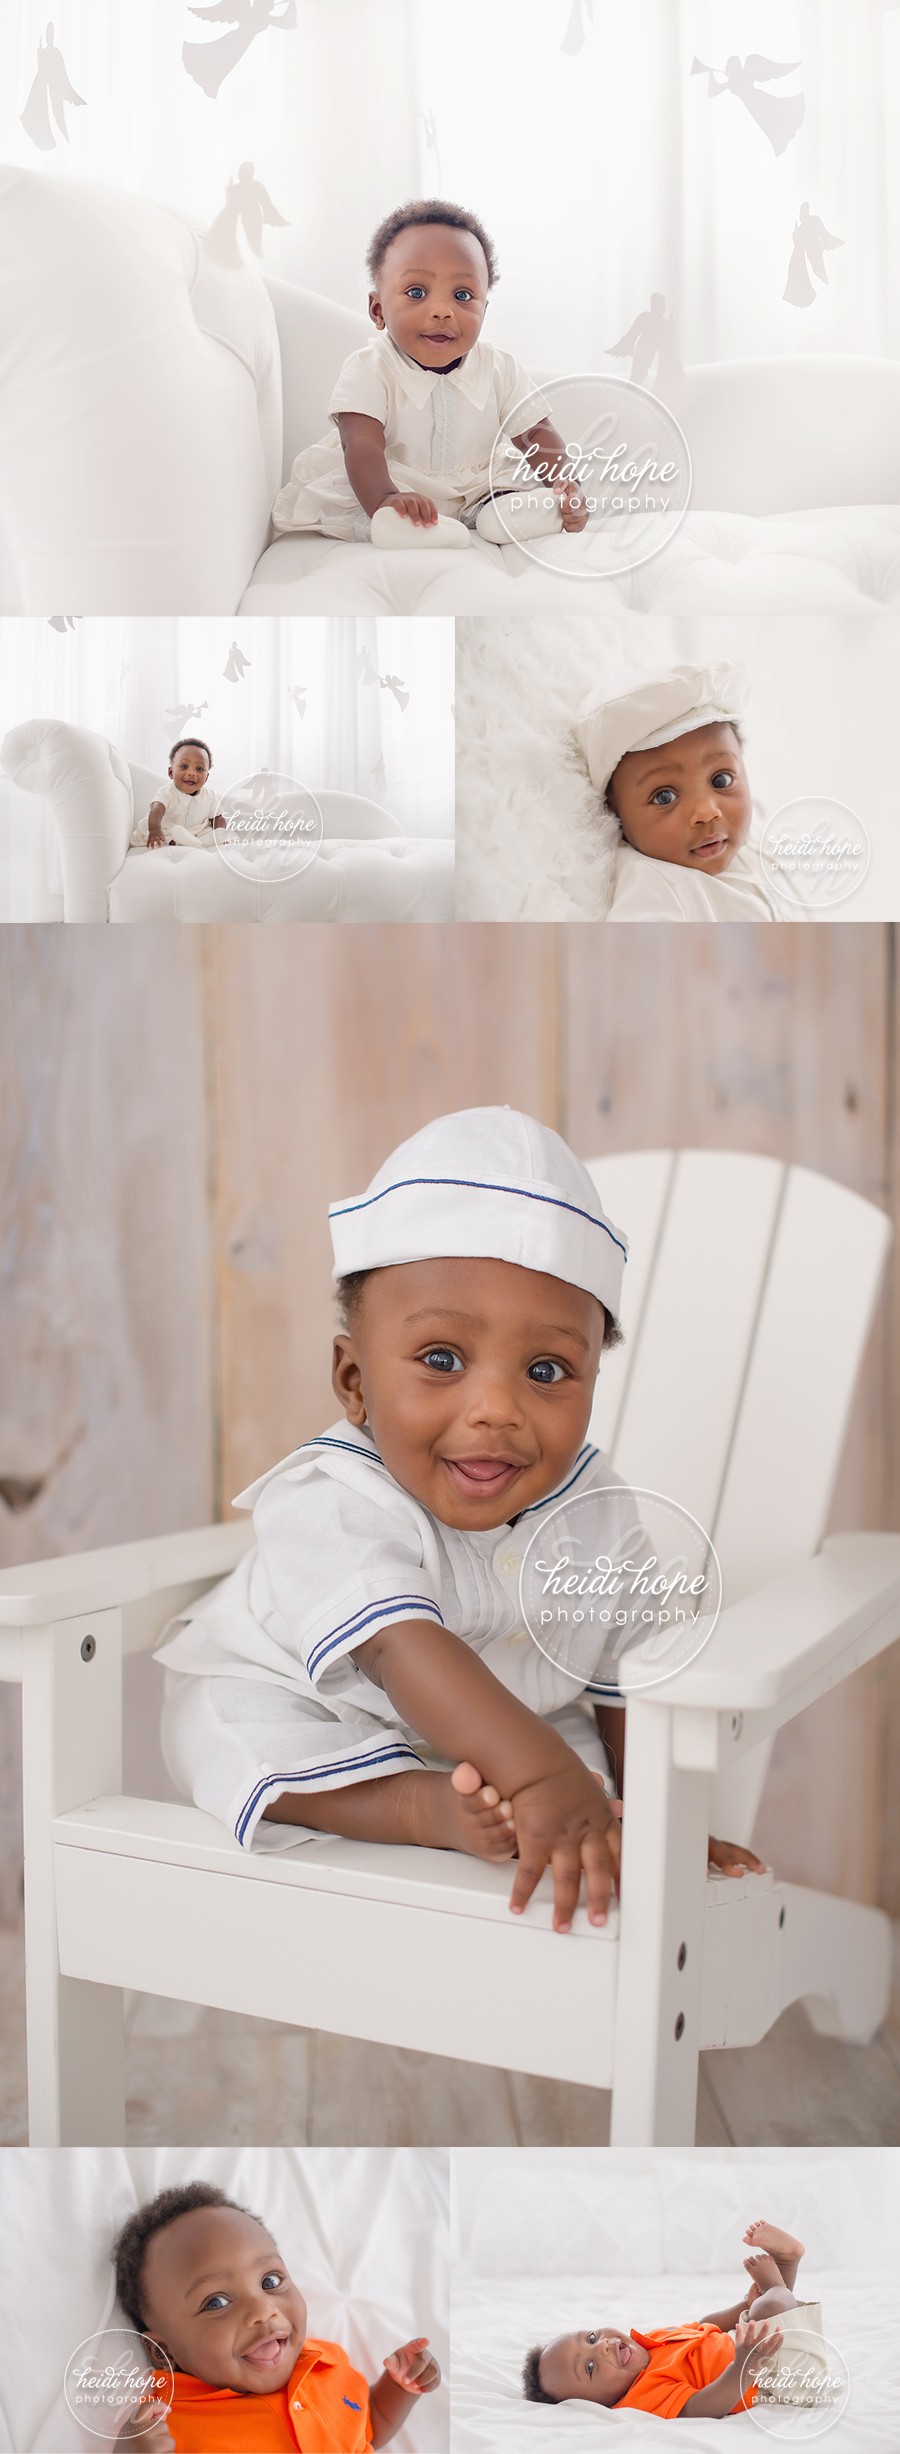 baby boy christening portraits